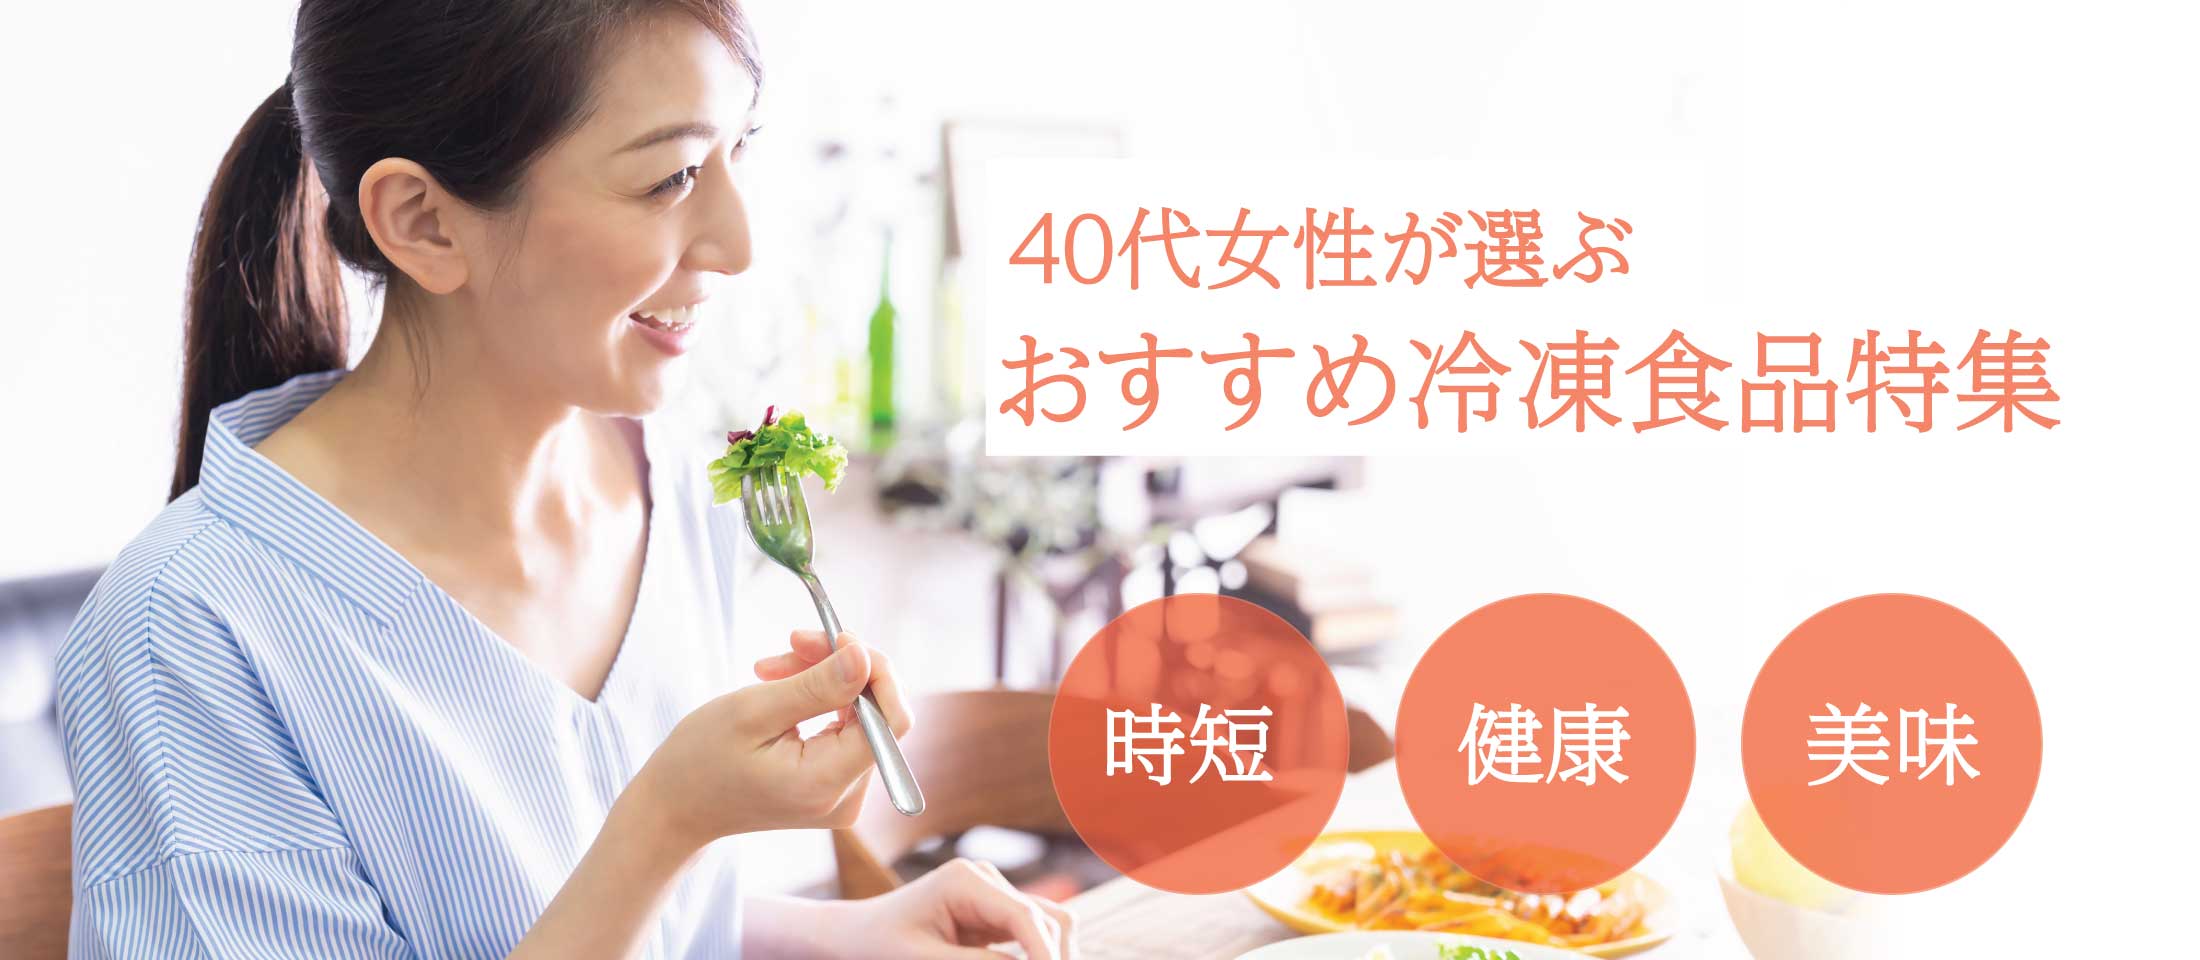 -時短・健康・美味しさ-
40代女性が選ぶ人気冷凍食品特集 業務用食品・冷凍食品通販 ナカヤマフーズオンライン